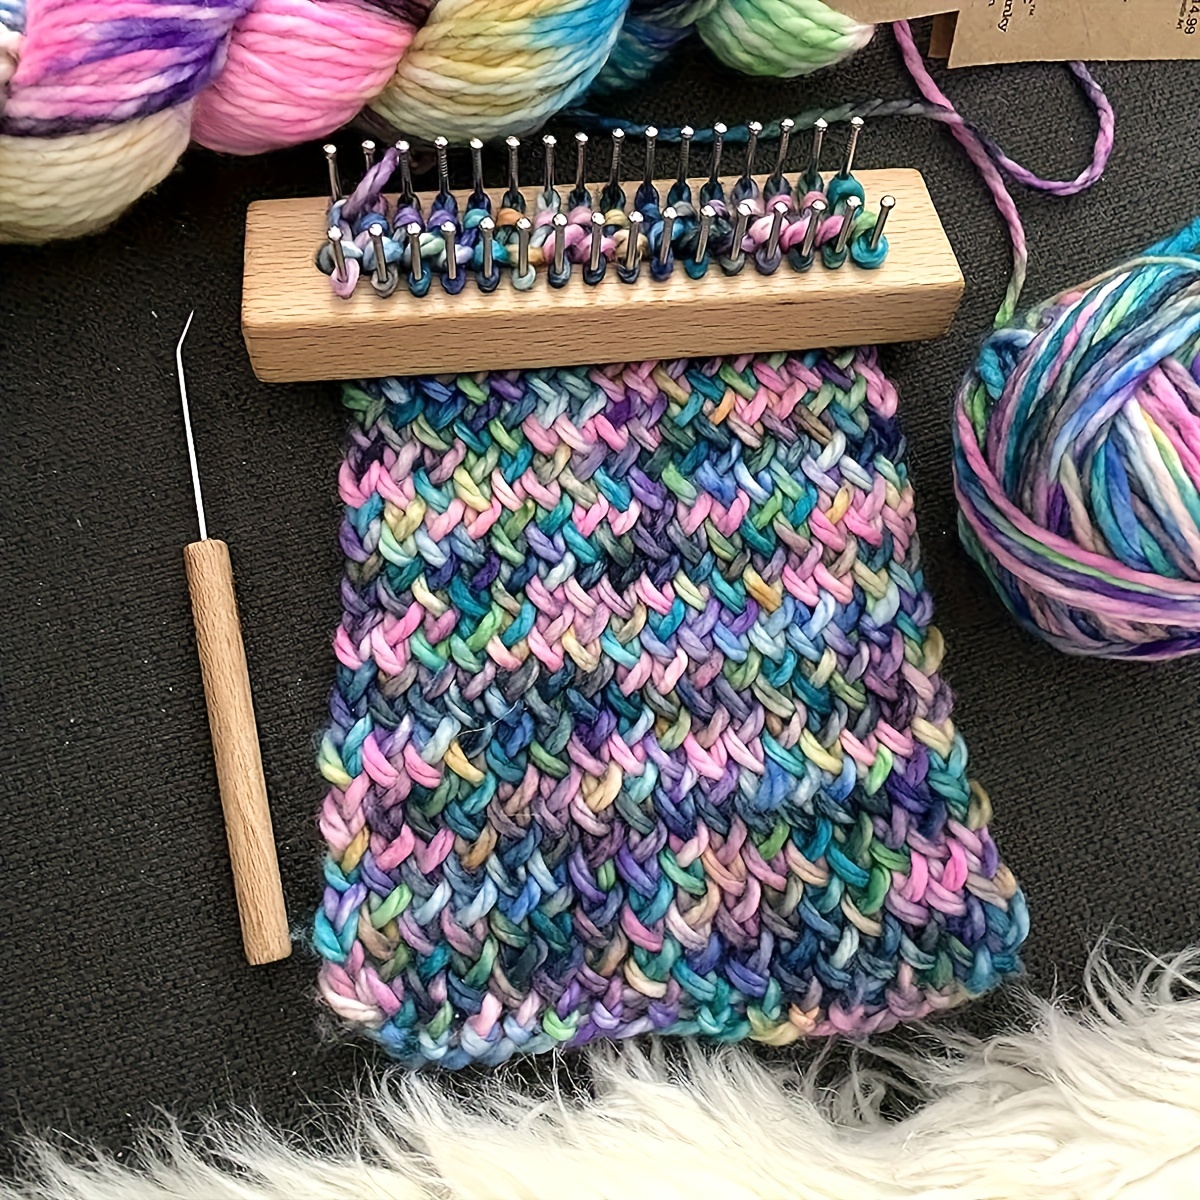 Weaving Looming Knitting Kit Weaving Scarf Sweater Shawl Stitching